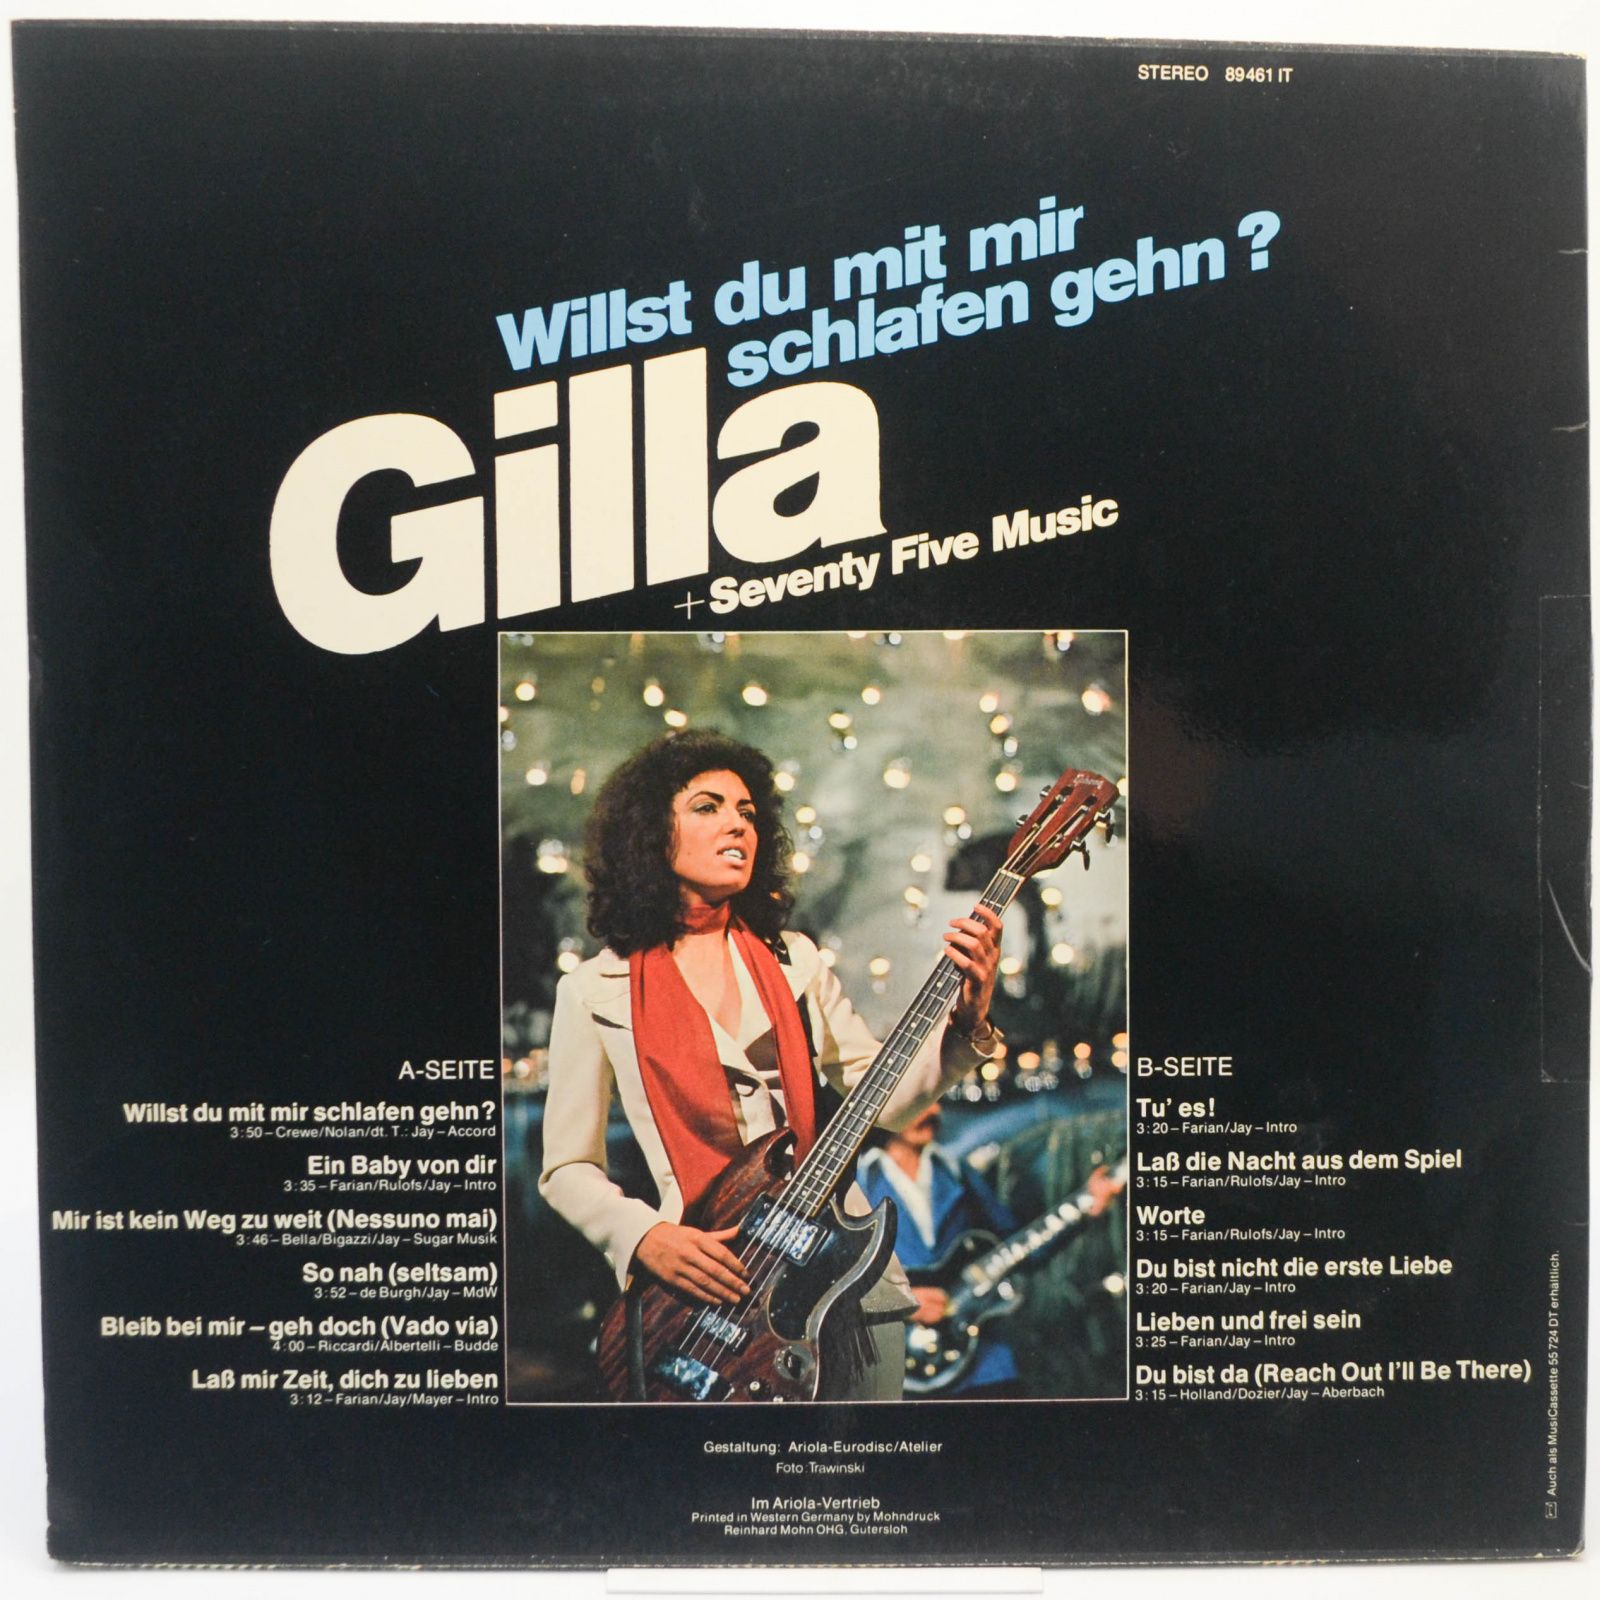 Gilla + Seventy Five Music — Willst Du Mit Mir Schlafen Gehn?, 1975